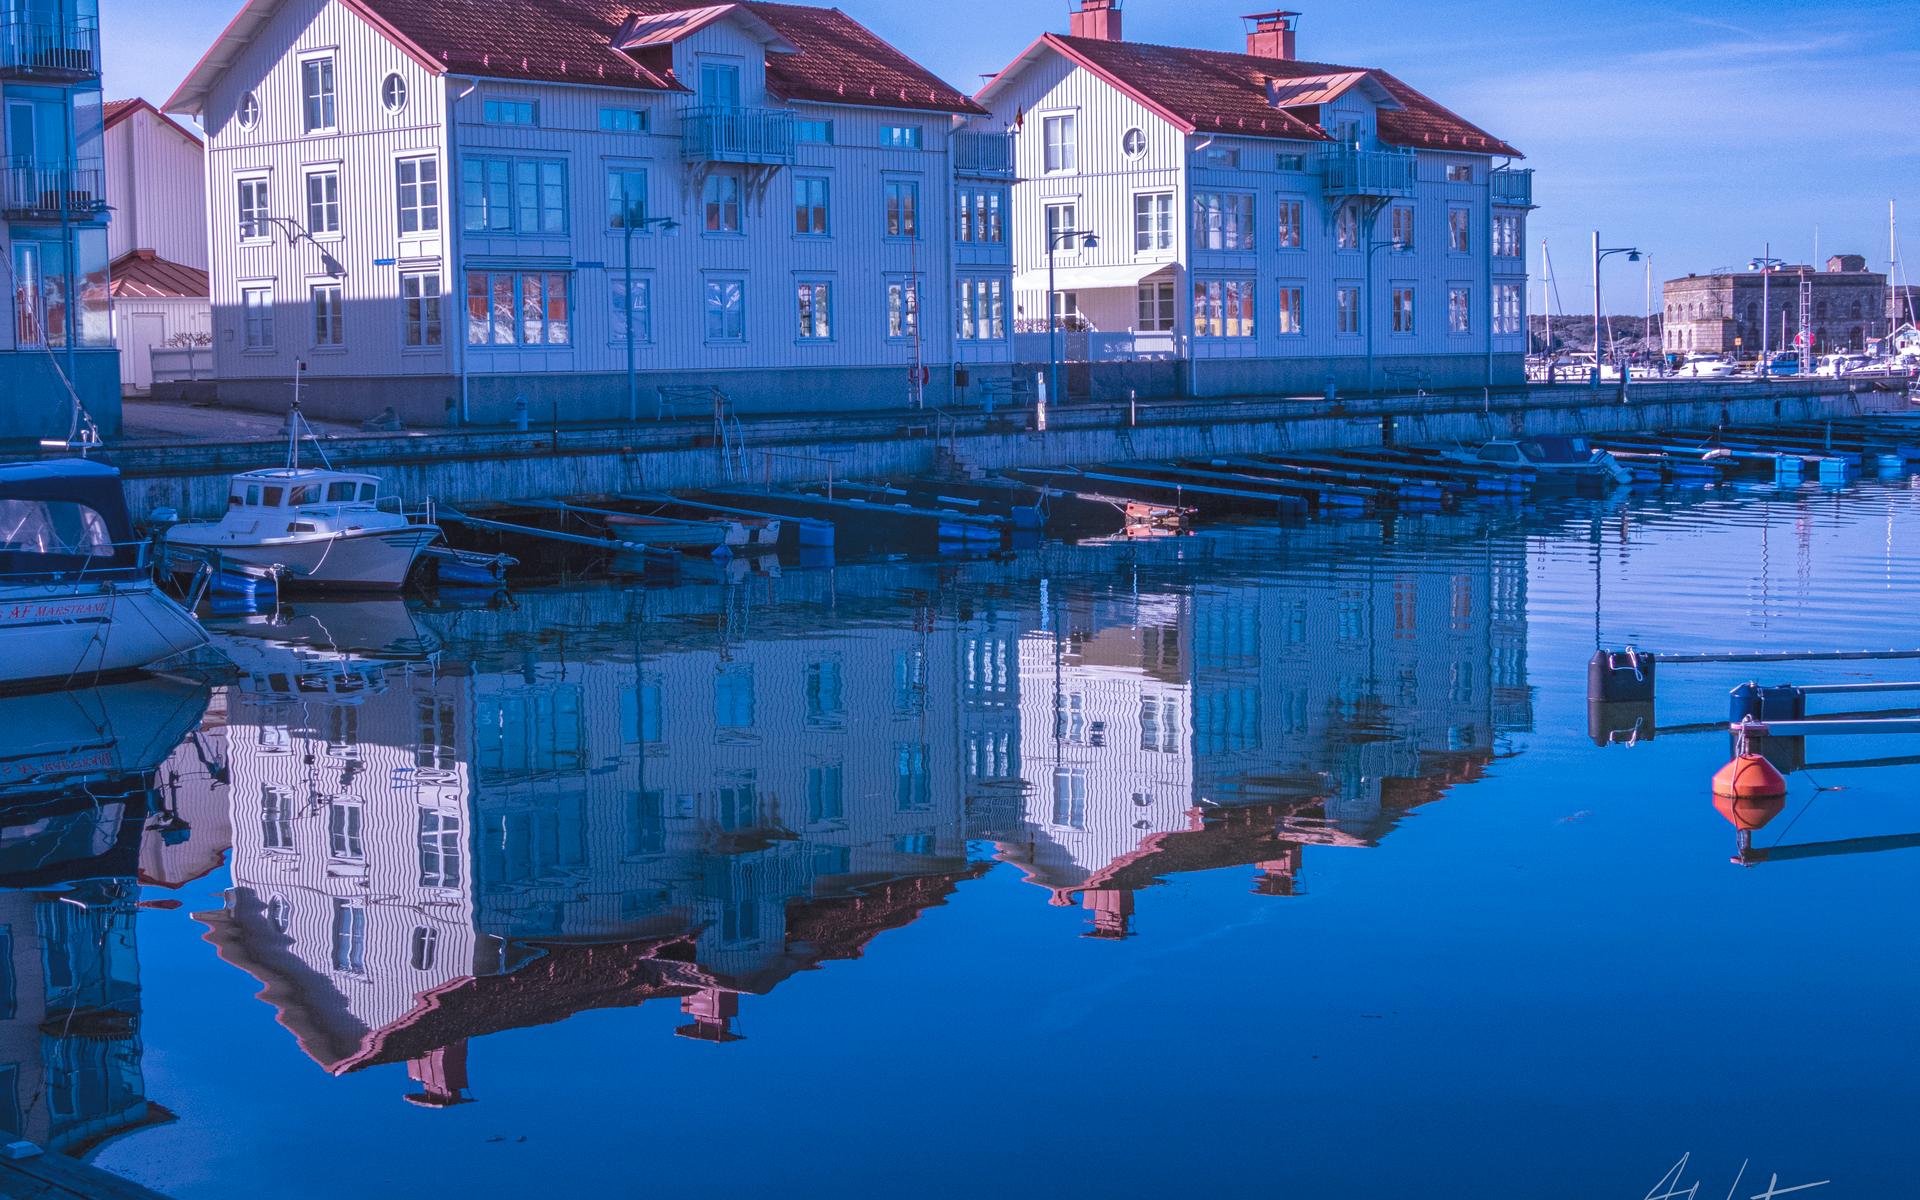 ”Den 16 april var jag på väg till Marstrandsön. På väg till färjan såg jag denna bild med fina vattenreflexer. Nästan helt bleke och både hus på Hedvigsholmen och Strandverket kom med på bilden”, skriver Anders Garton.